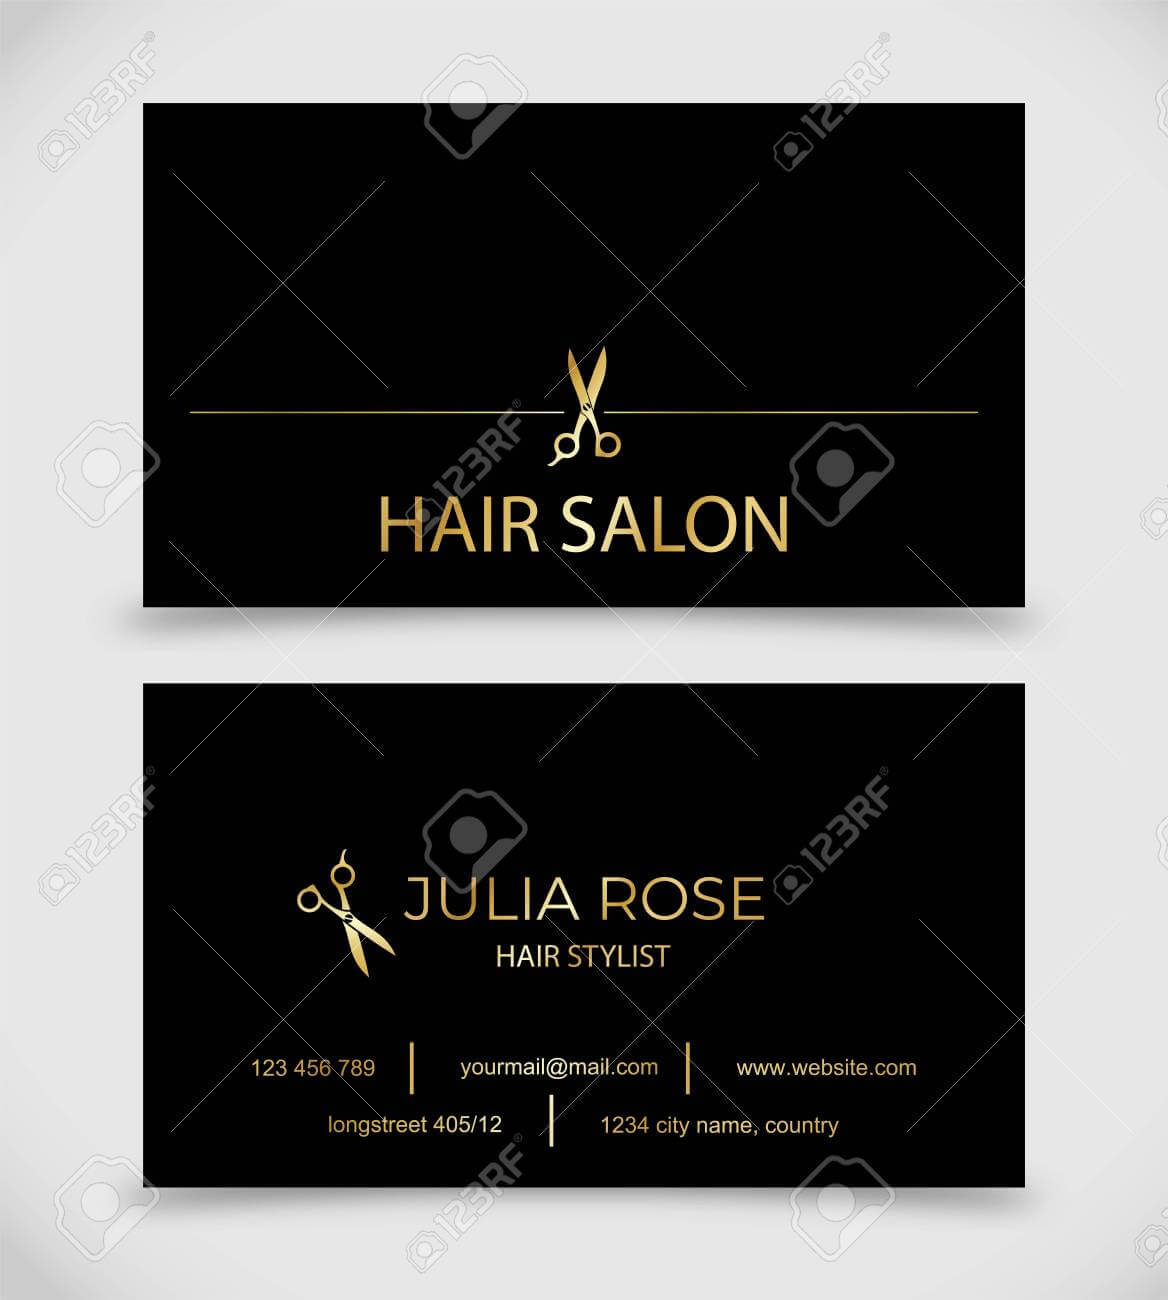 Hair Salon, Hair Stylist Business Card Vector Template Regarding Hair Salon Business Card Template